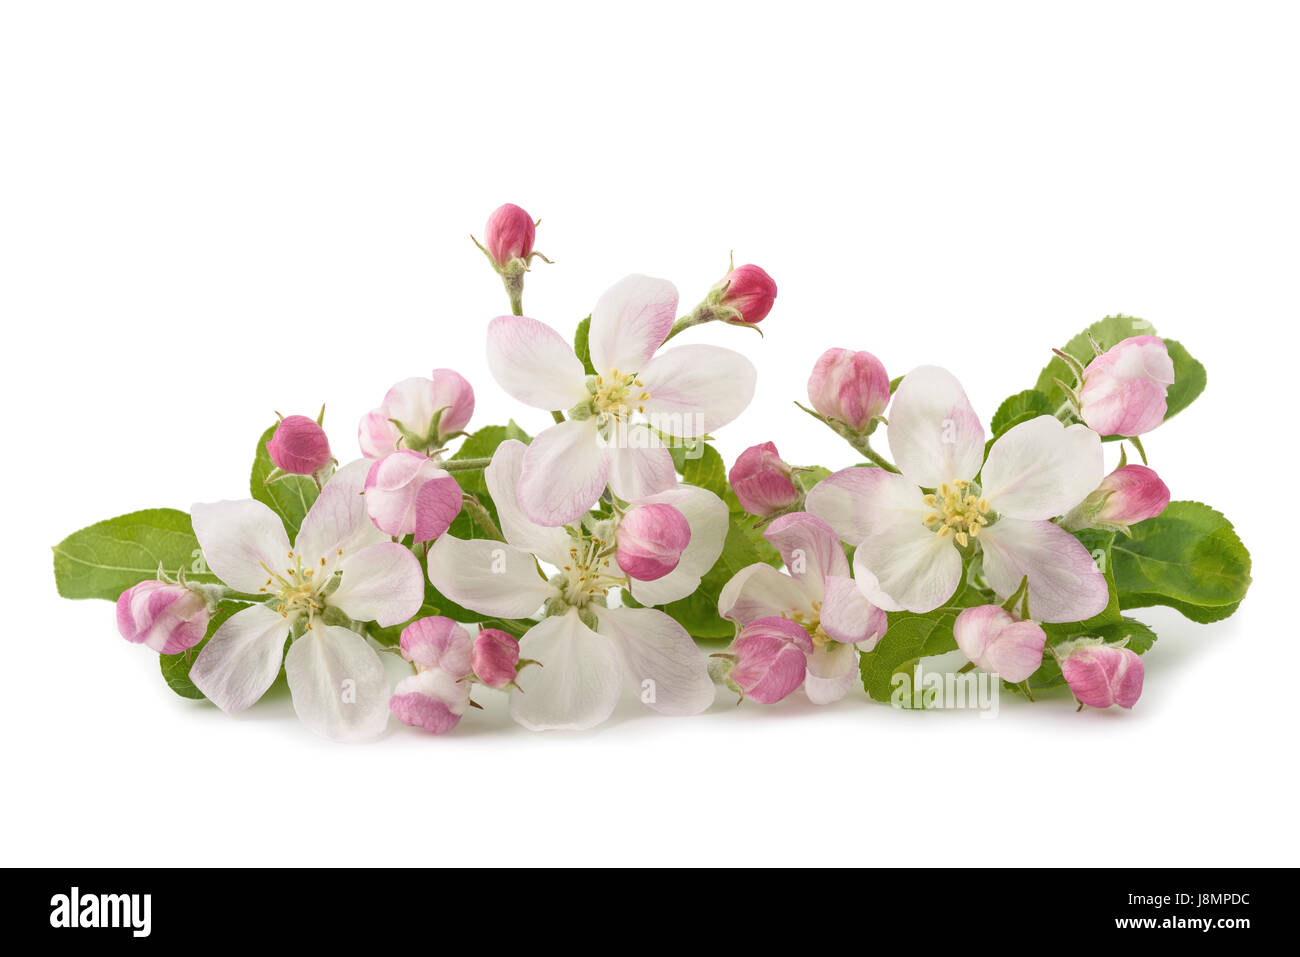 Apple fiori con boccioli isolati su sfondo bianco Foto Stock